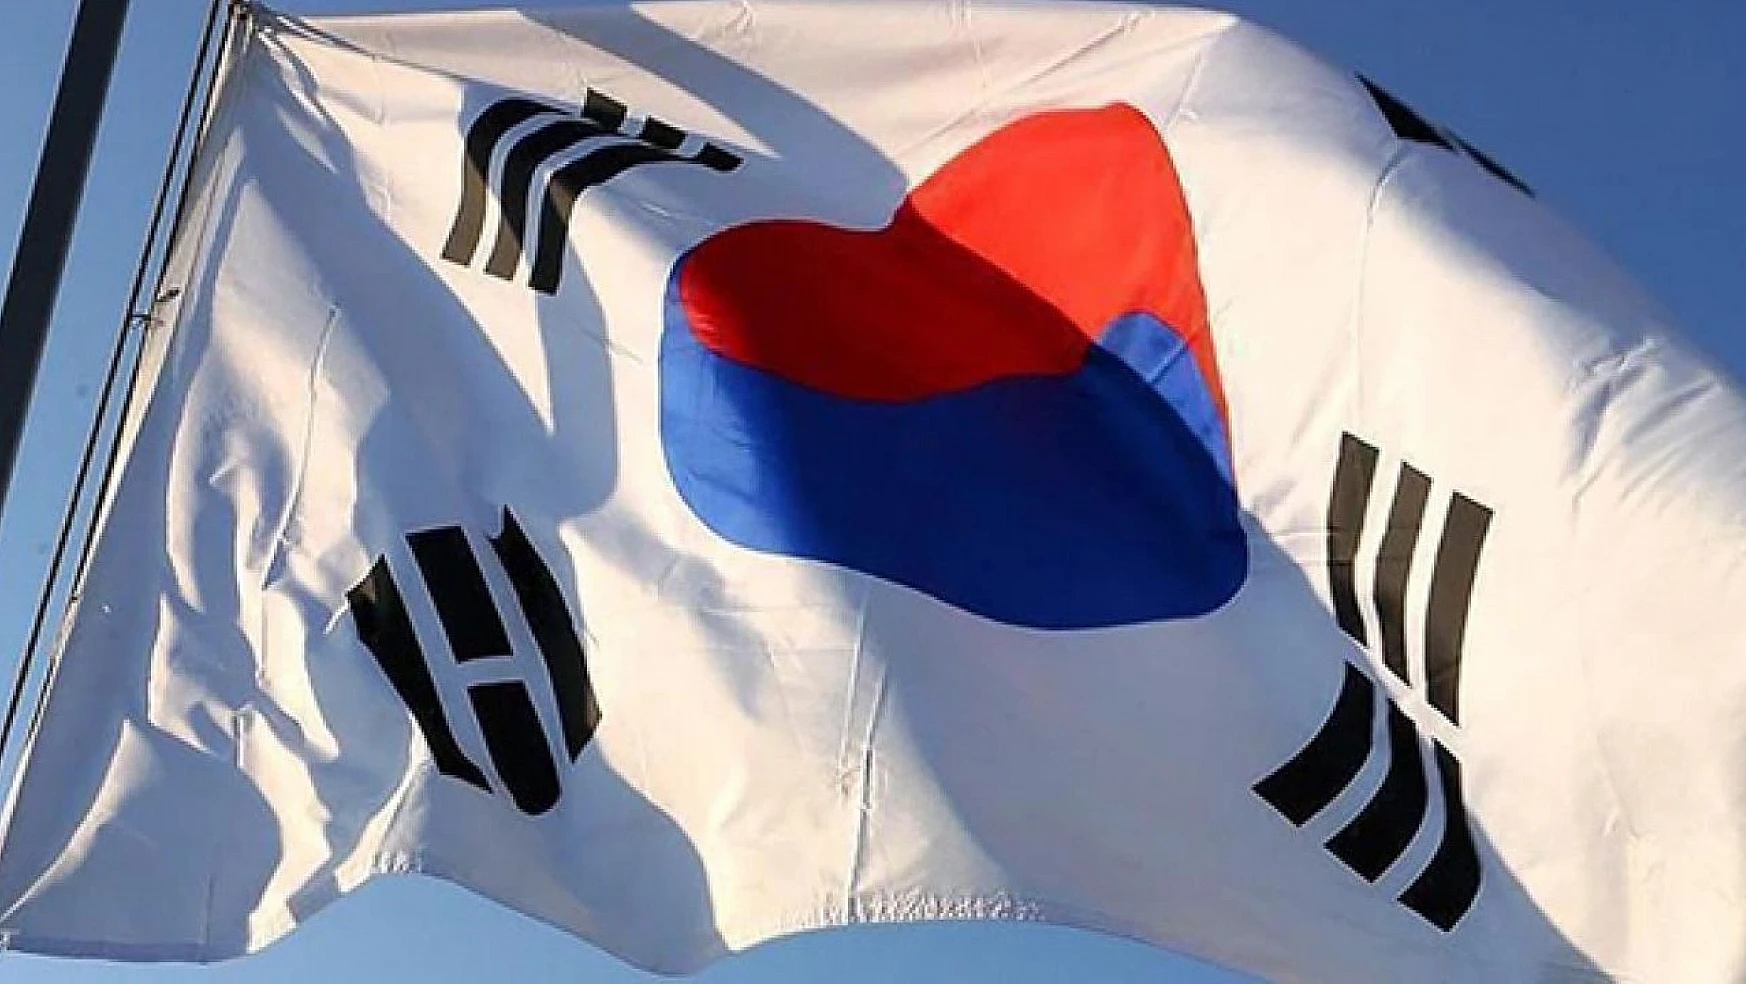 Güney Kore'de yaşa göre saygı: Toplumsal uyumun temeli